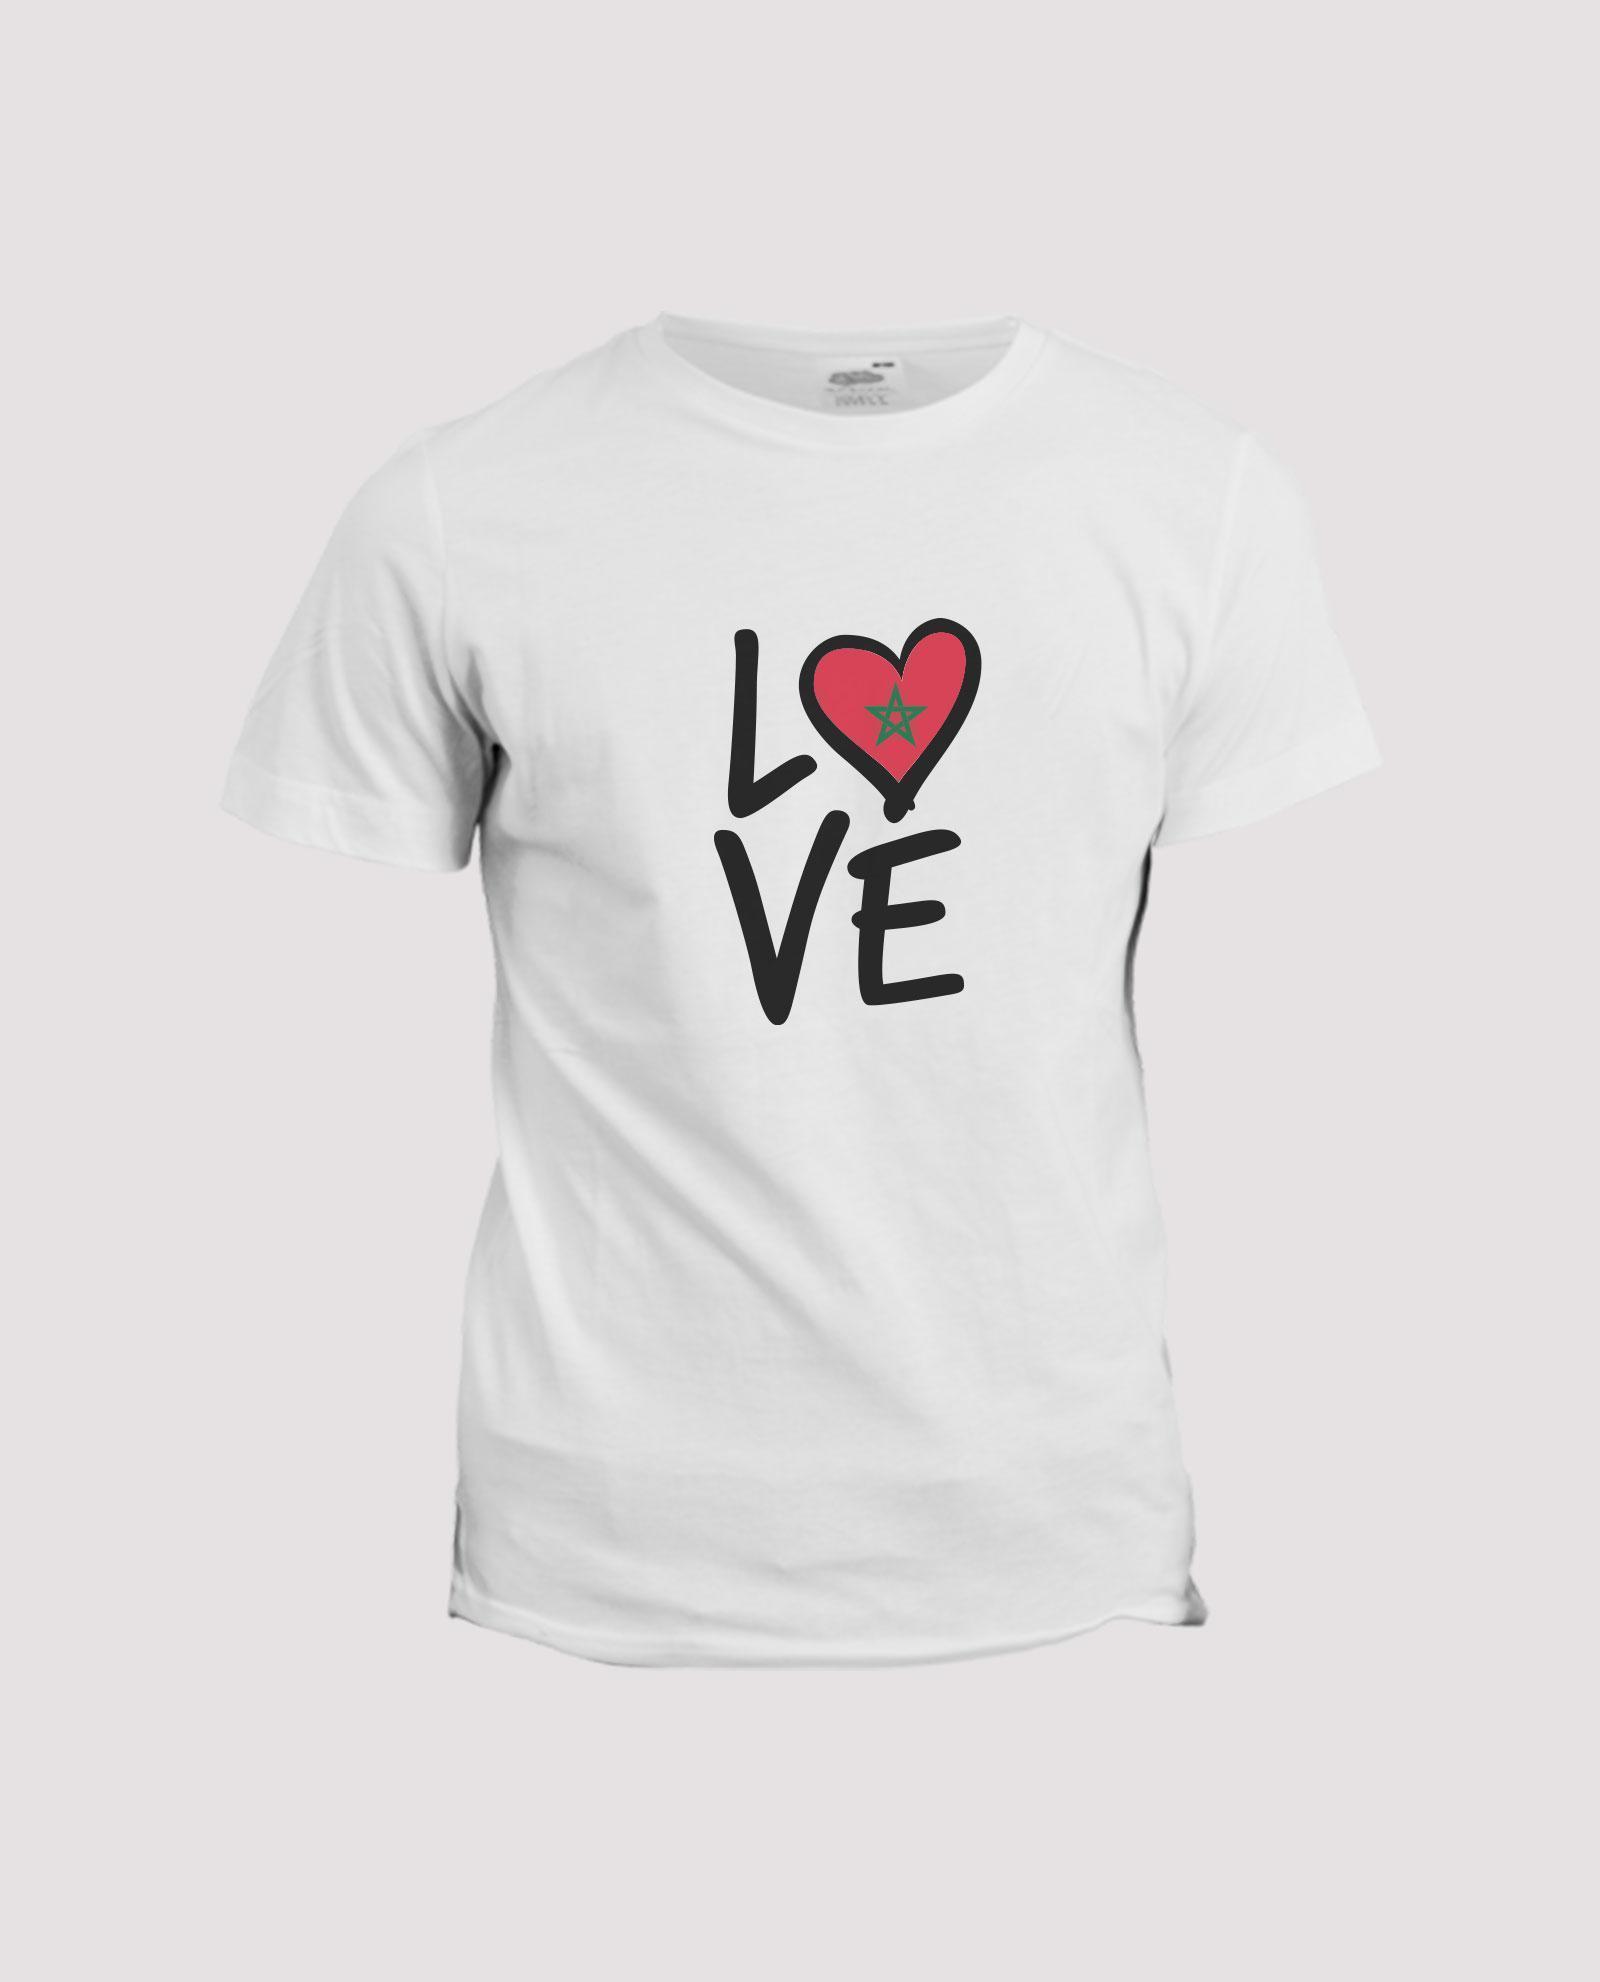 la-ligne-shop-t-shirt-personnalise-love-pays-maroc